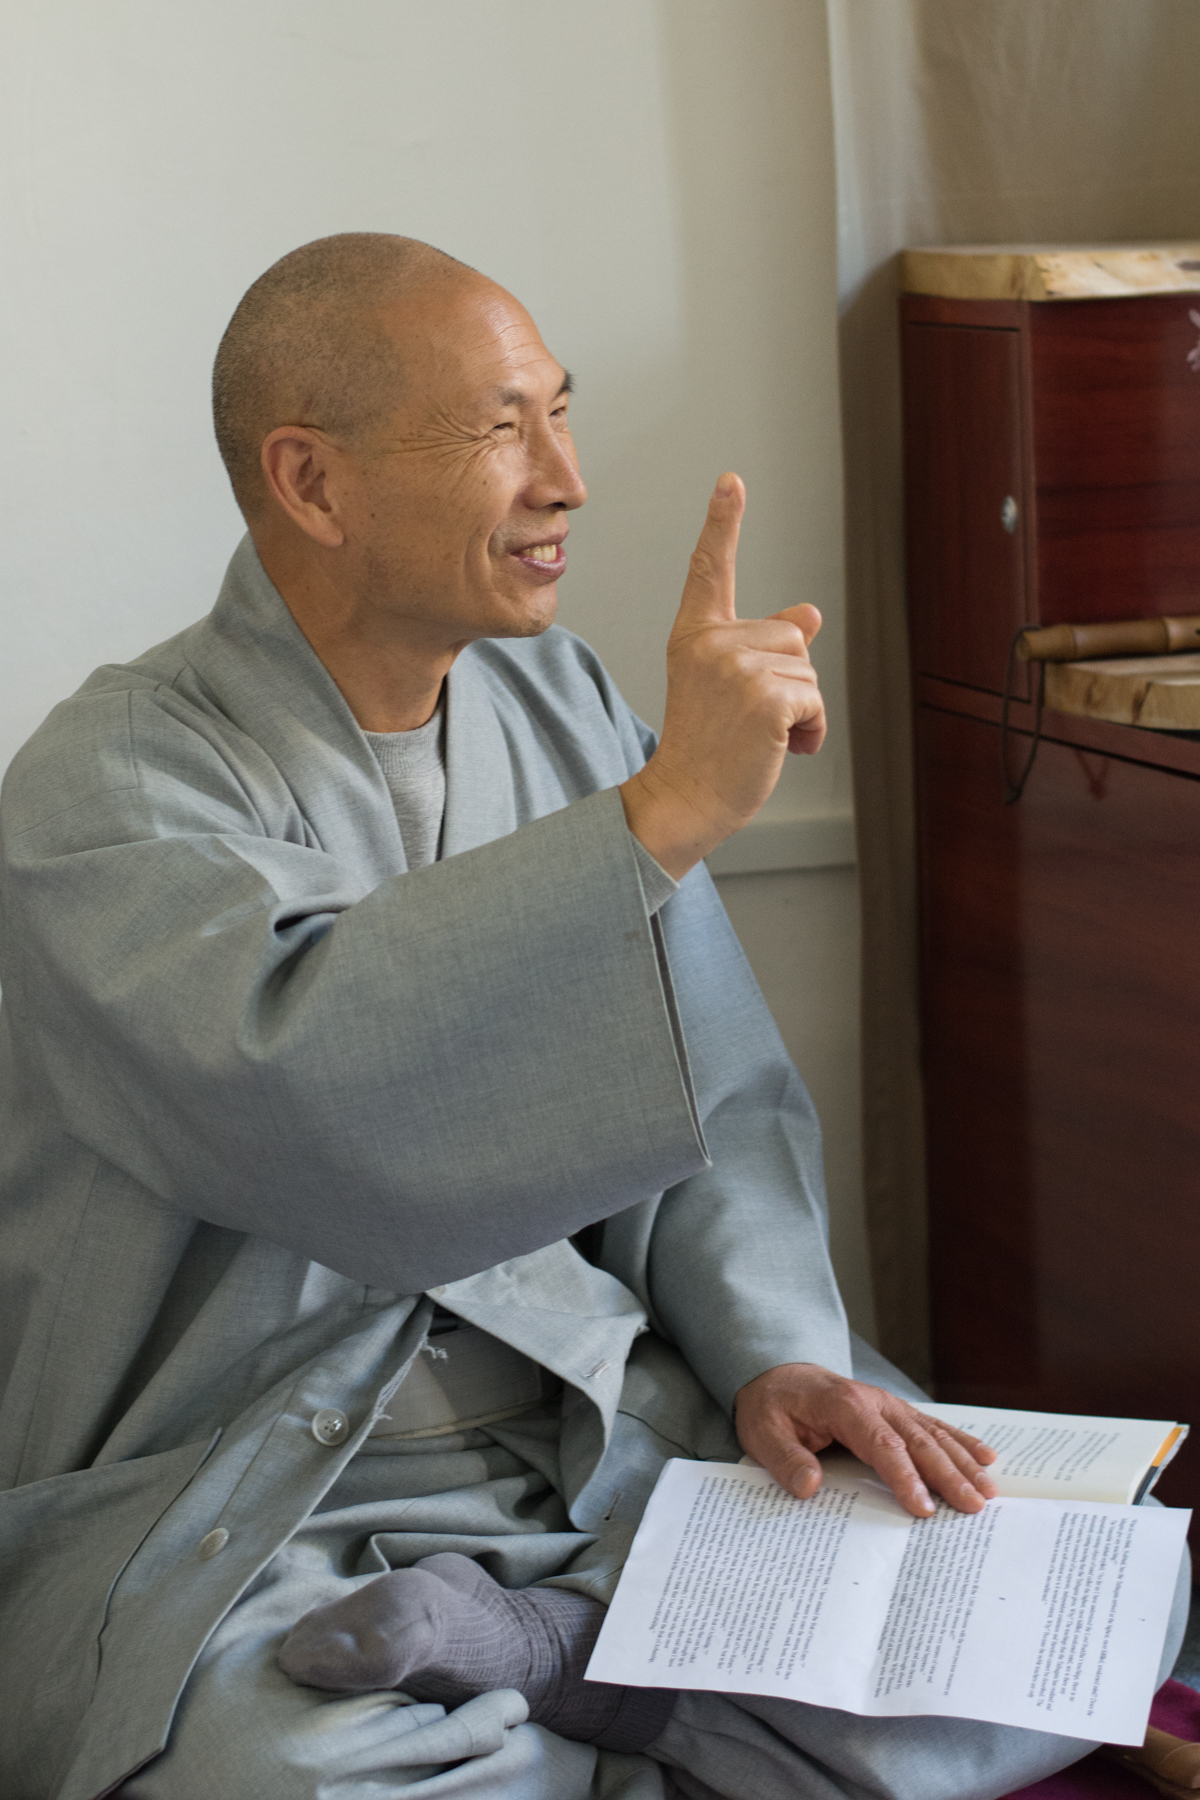 Véget ért Prof. Dr. Jinwol Lee (Dongguk University) koreai zen mester 6 napos intenzív gyémánt szútra kurzusa. A napi 8 óra munka során egymással együttműködve szemináriumi és meditációs keretek között dolgoztunk a szöveggel. Az utolsó napon pedig elvonultunk a ködös Uszóra, ahol meditációval zártuk a kurzust.